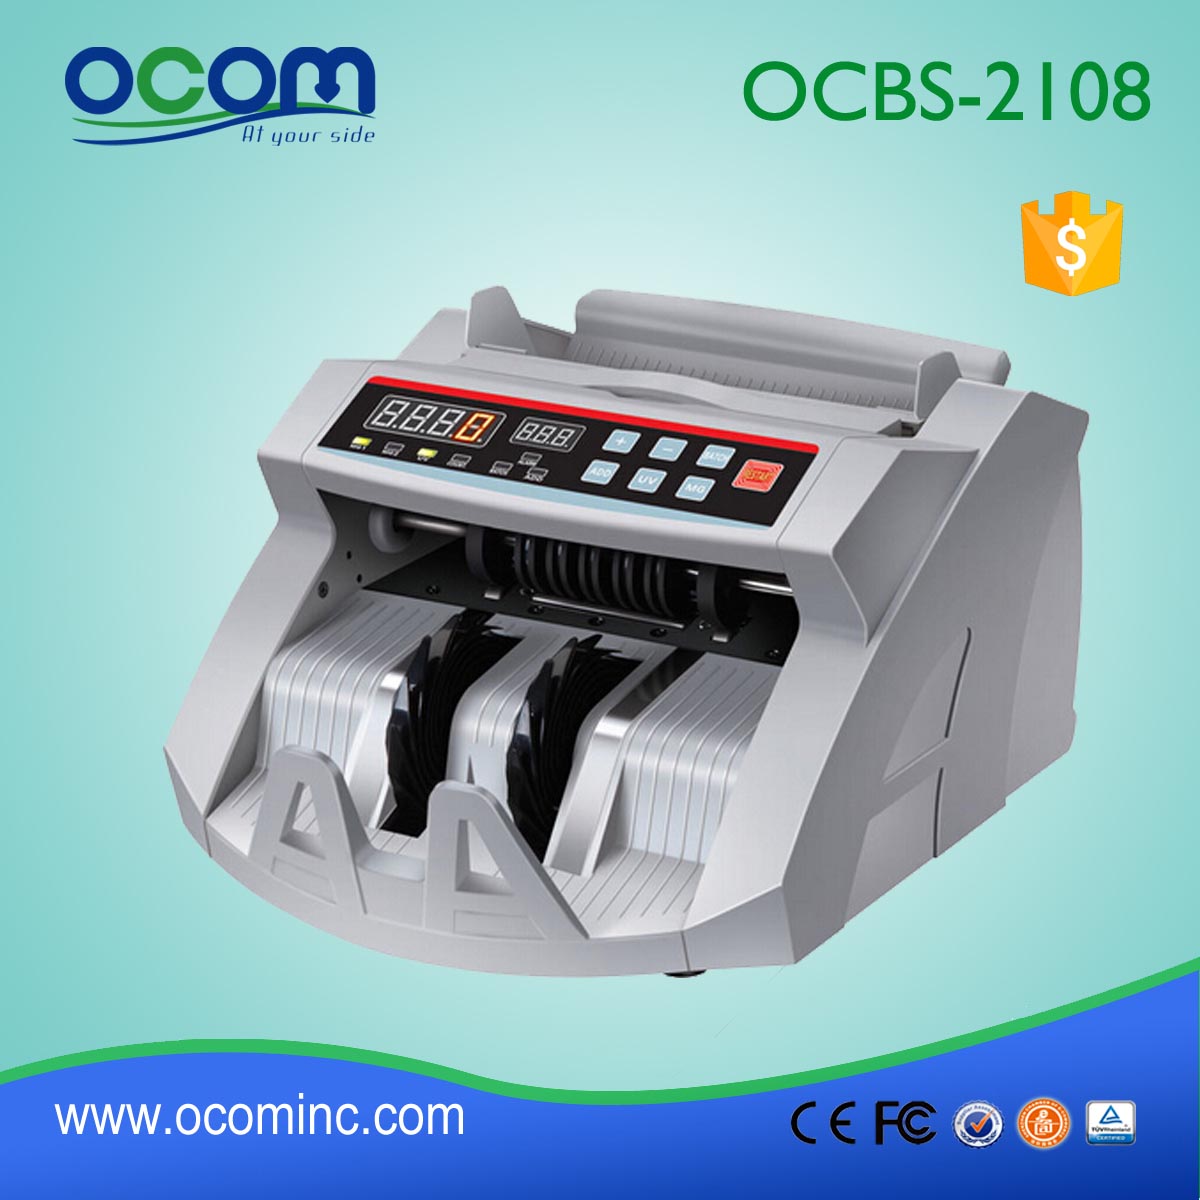 (OCBC-2108) - OCOM fez 2016 mais novo contador de débito automático